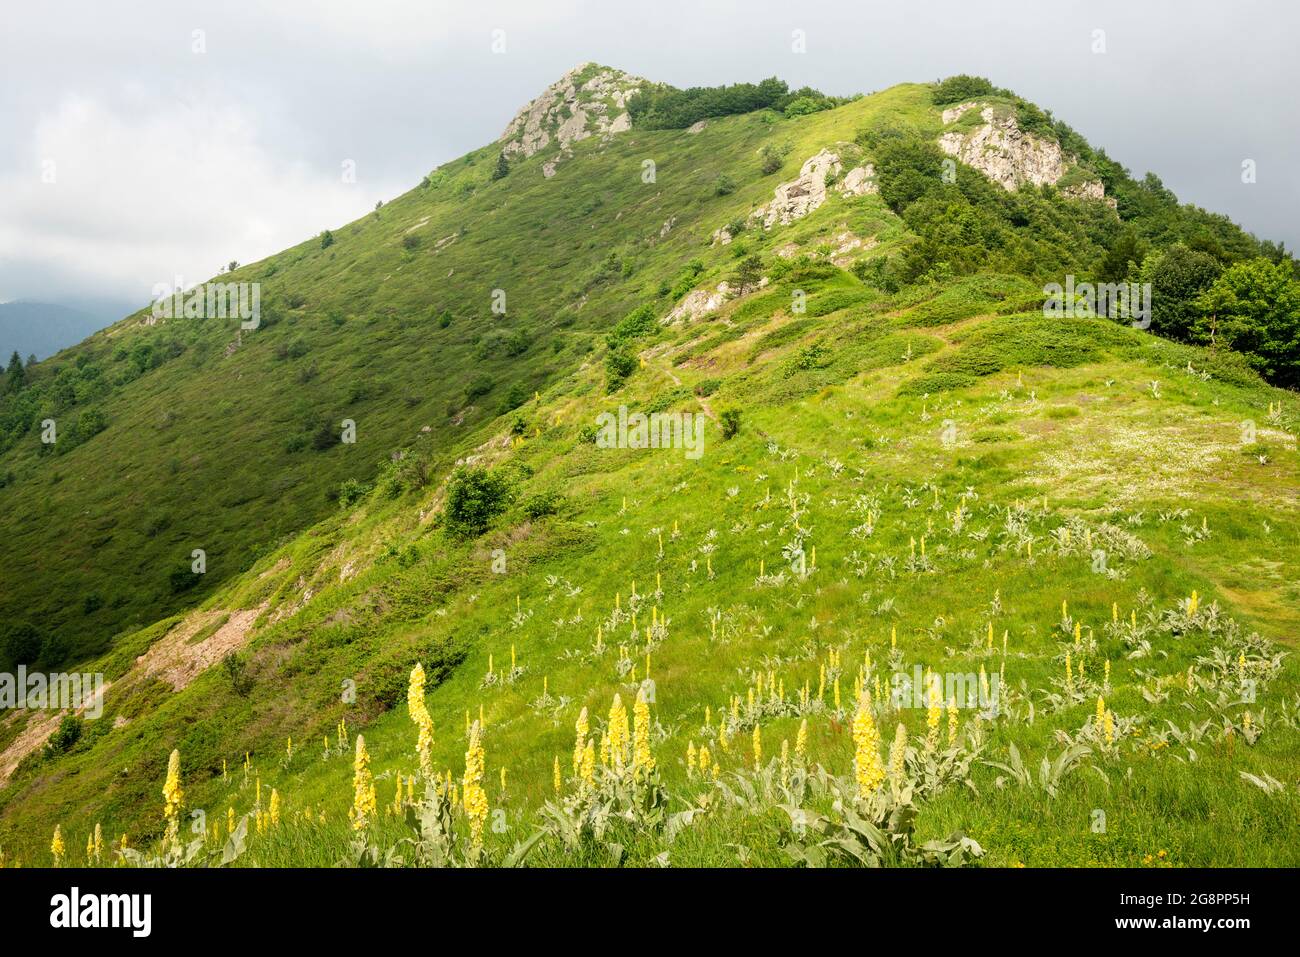 Vista pittoresca della sella di picco di Kucheto e Verbascum Thapsus o Grande Mullein fiorito in habitat naturale, Balcani centrali Biosfera UNESCO, Bulgaria Foto Stock